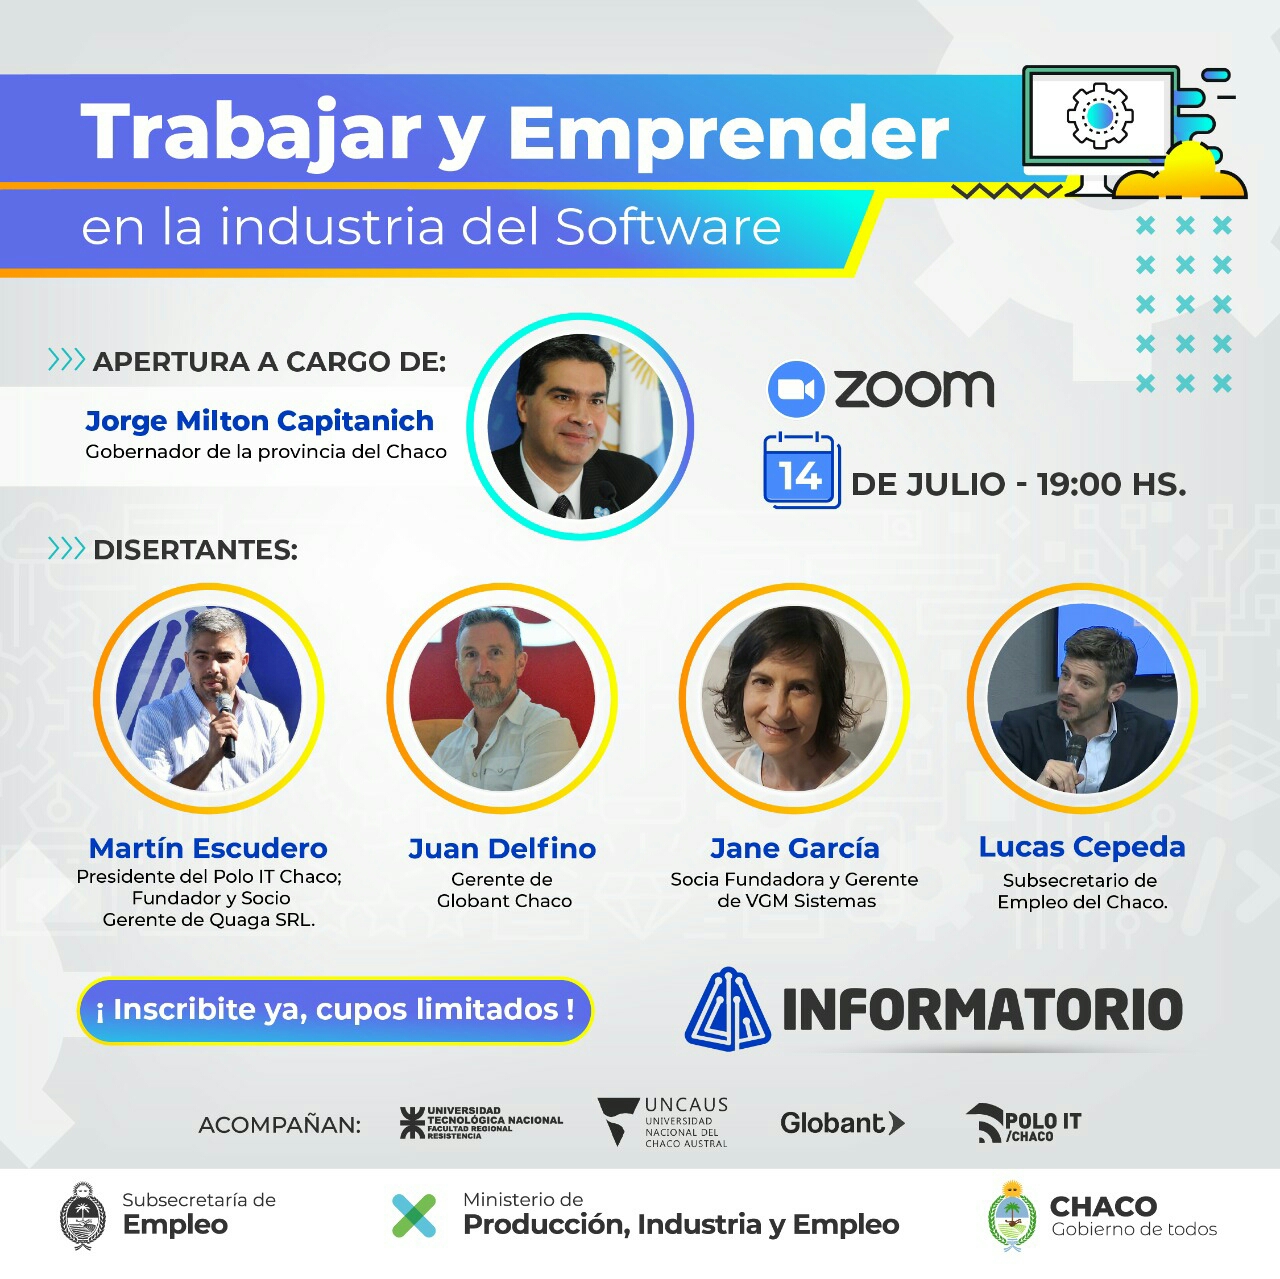 Informatorio 2020: El Gobernador abrirá mañana la charla virtual "Trabajar y Emprender en la Industria del Software"